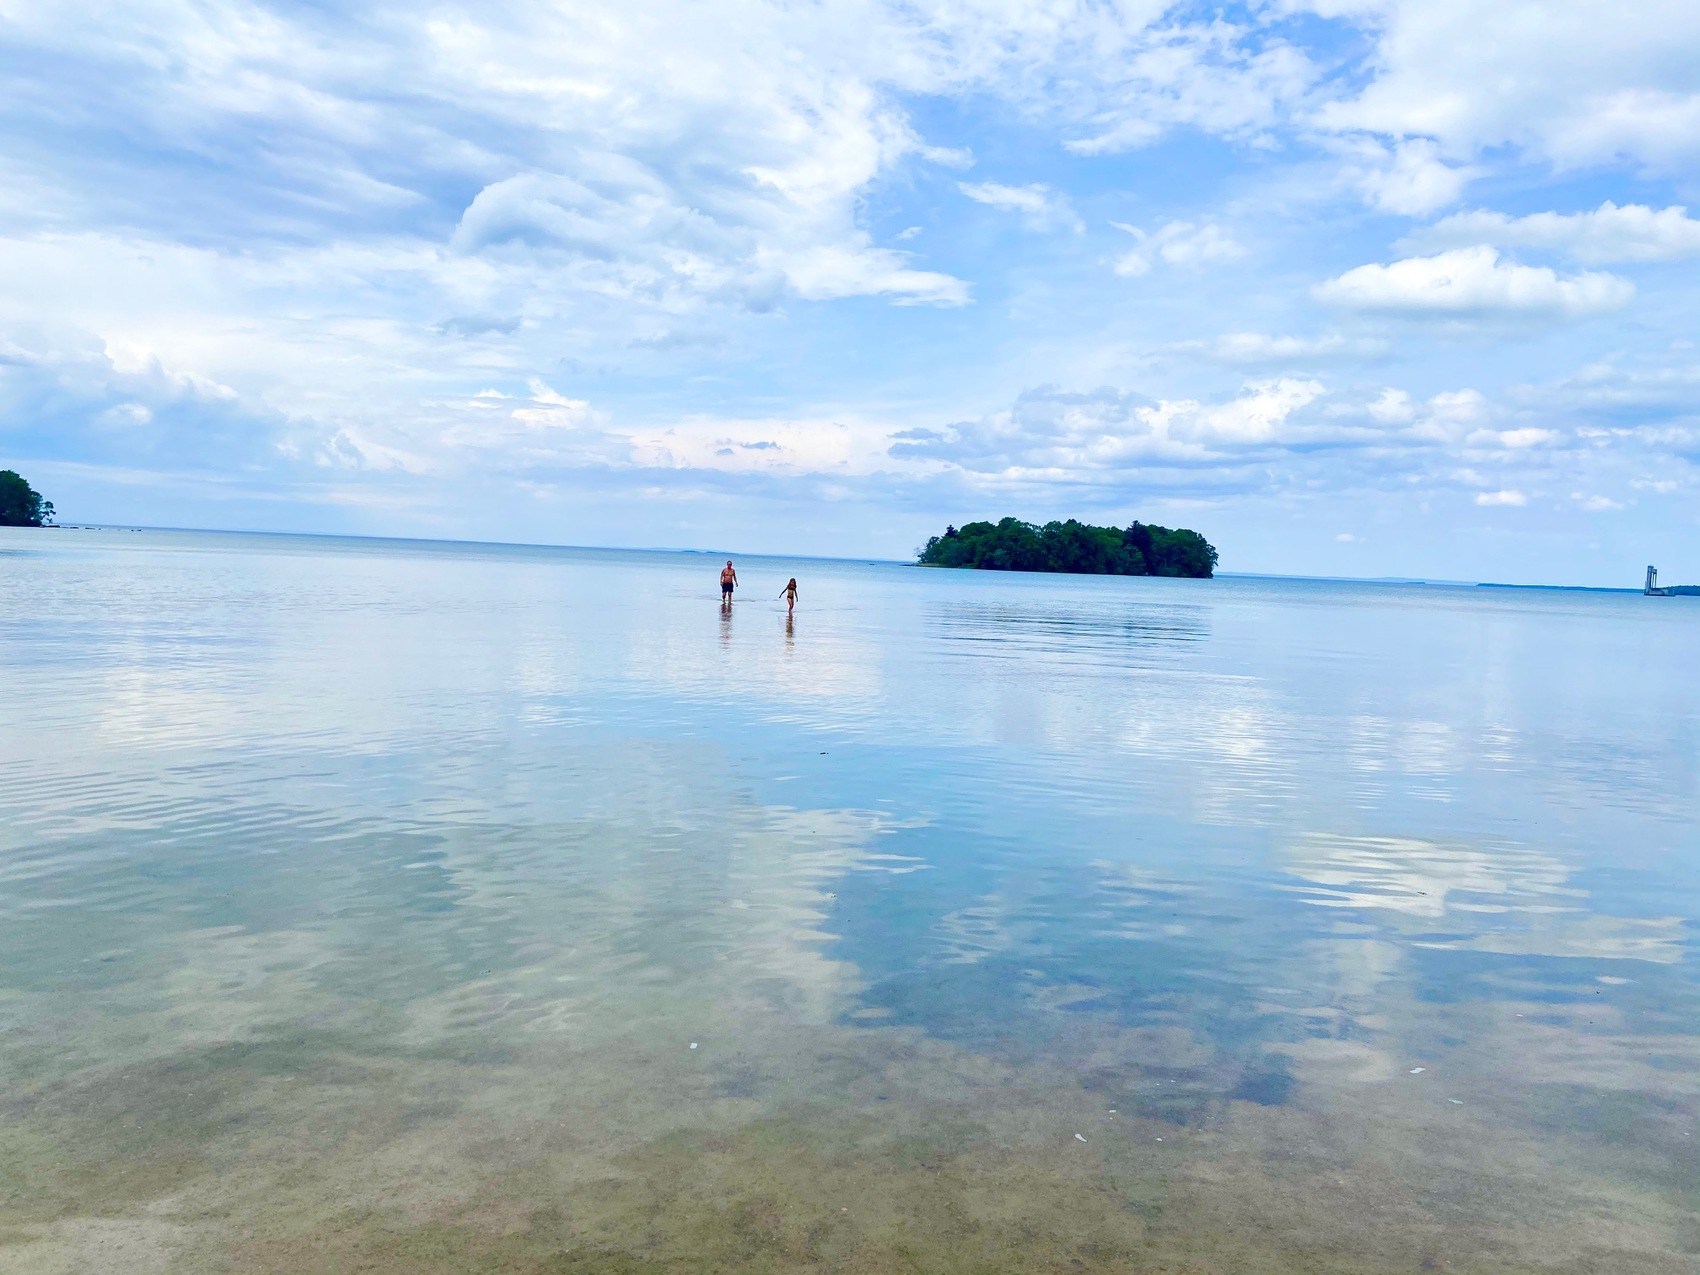 En bild på två personer som badar långt ut från stranden. I vattnet reflekteras himlen.